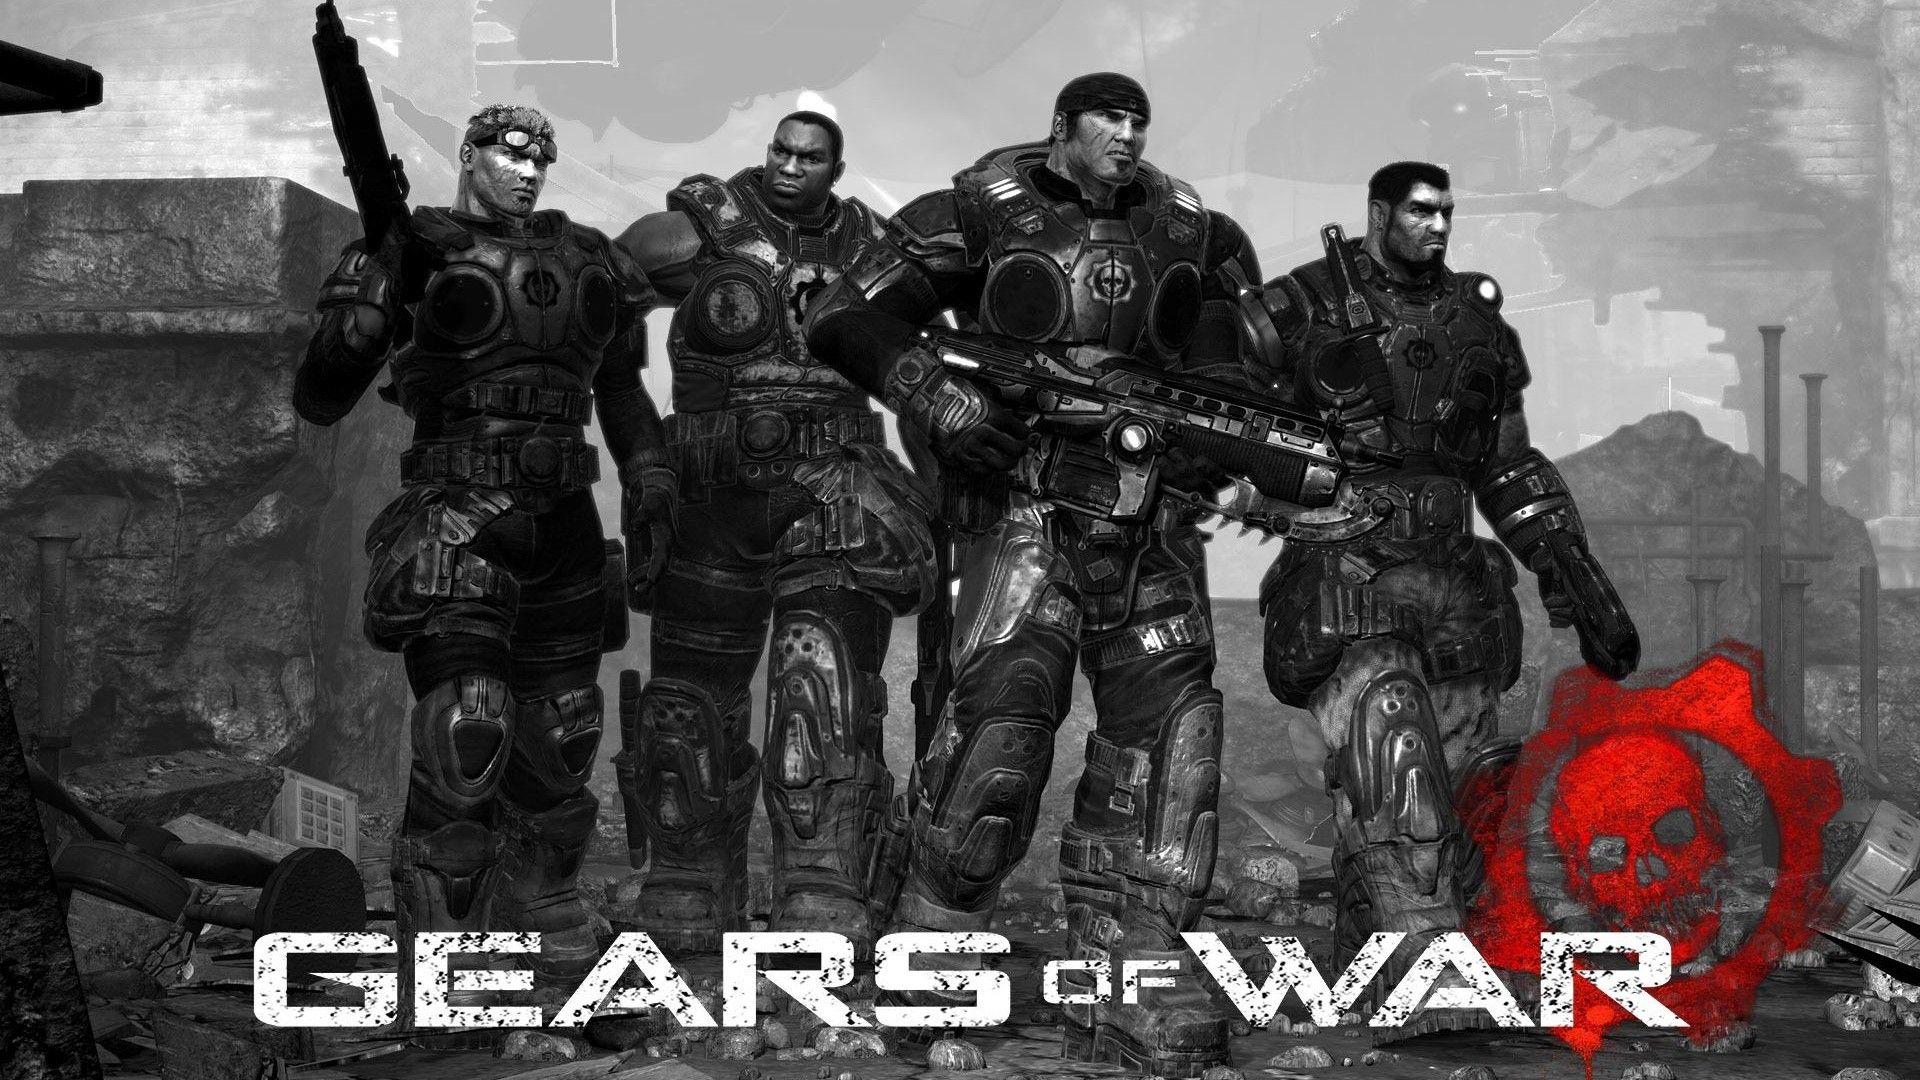 Gears of War HD desktop wallpapers : Widescreen : High Definition